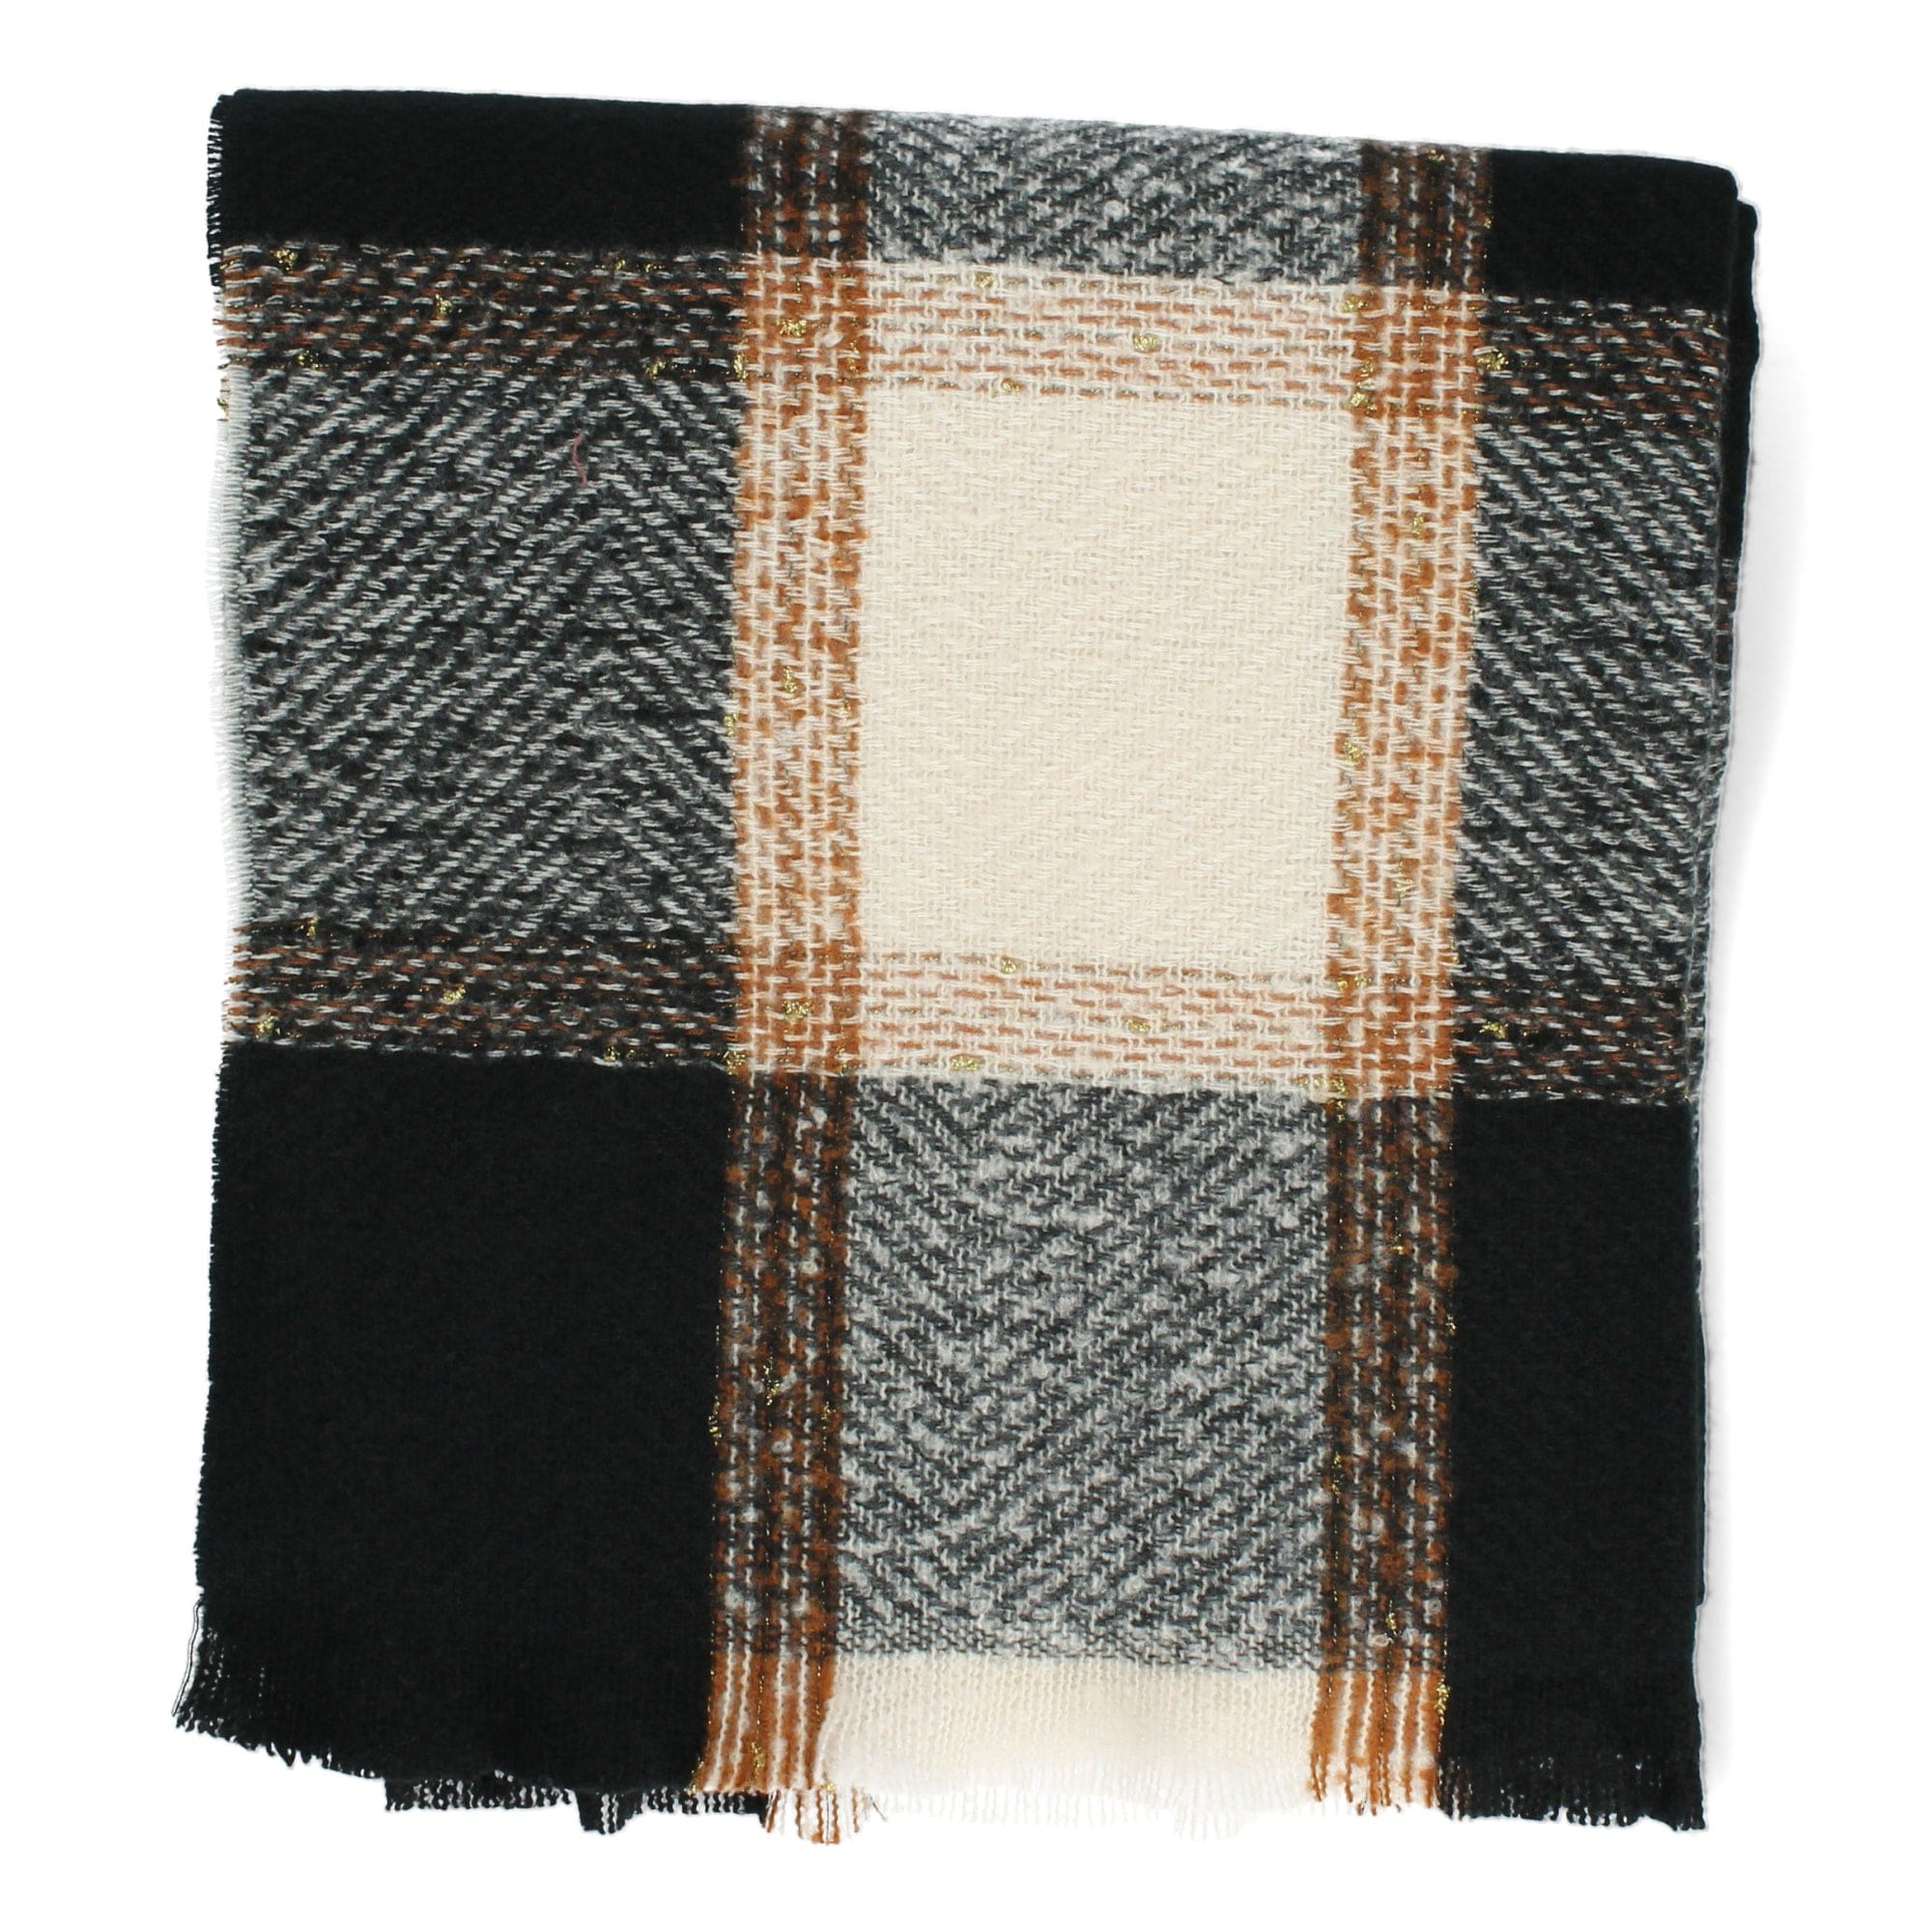 Crossed Scarf - Black - shawl